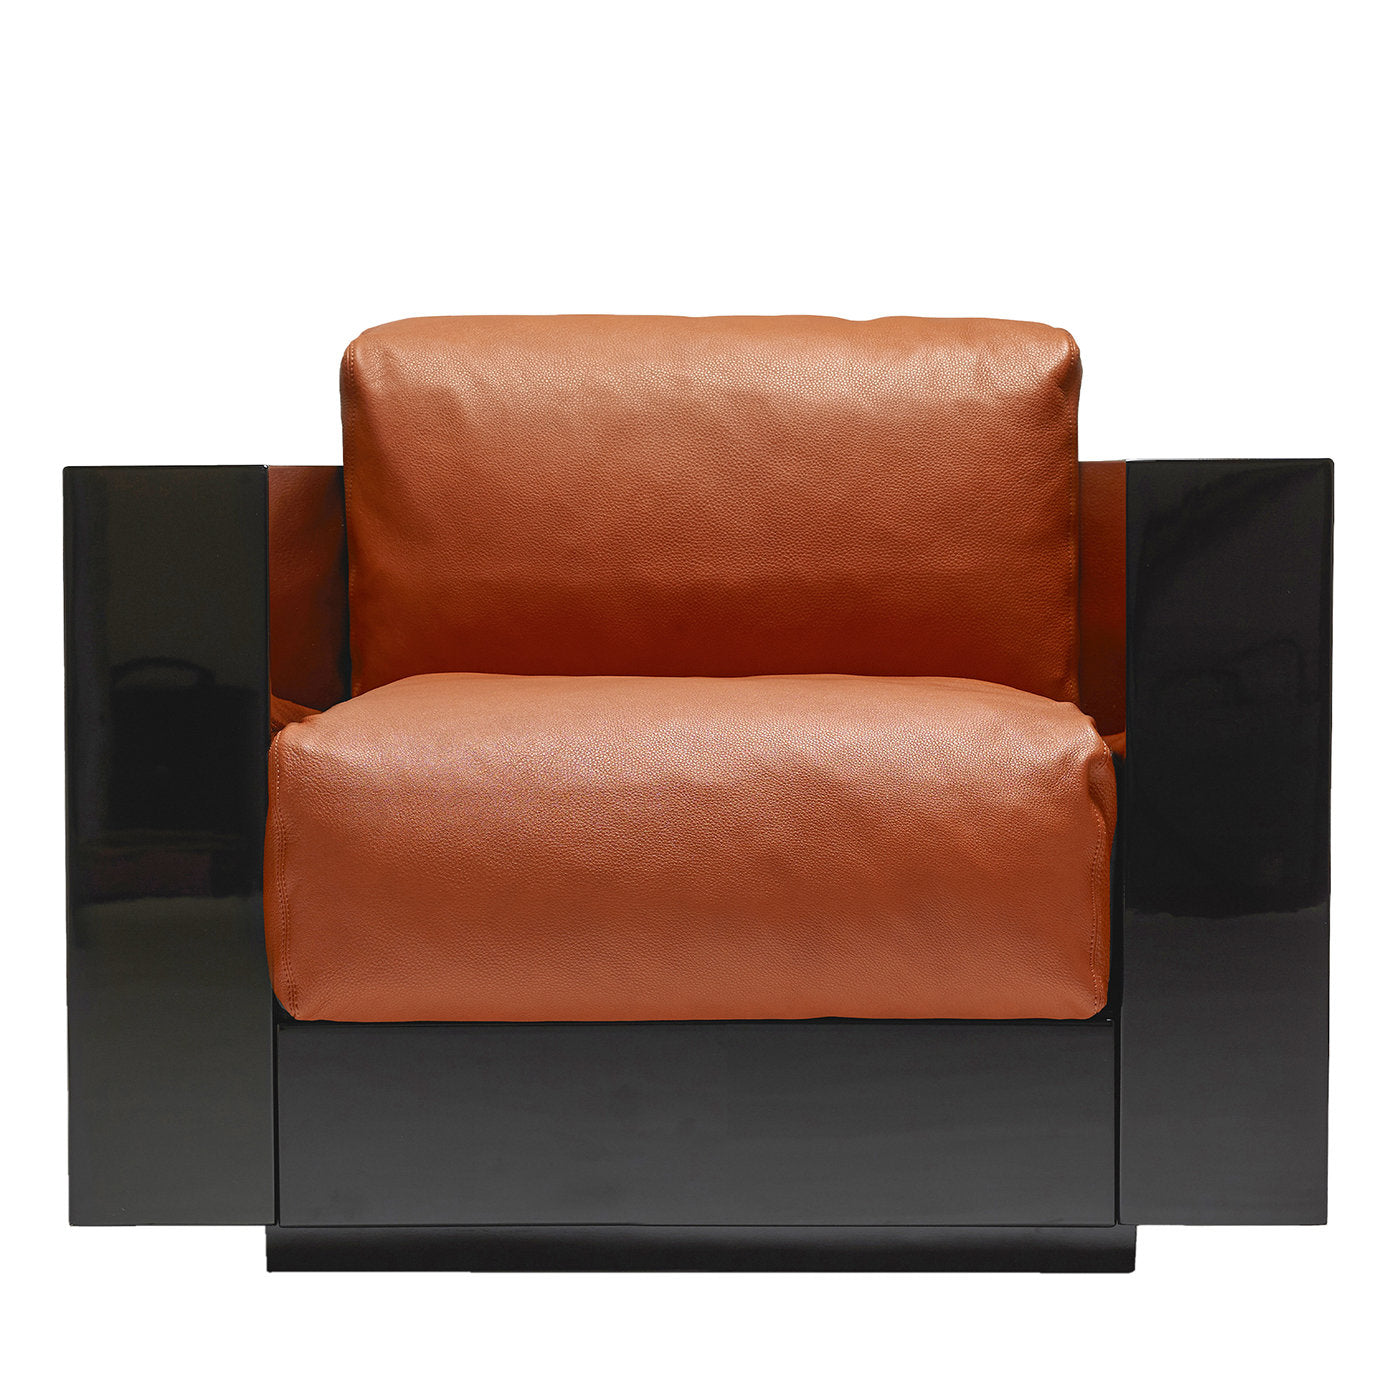 Saratoga Orange Armchair by Lella and Massimo Vignelli - Main view